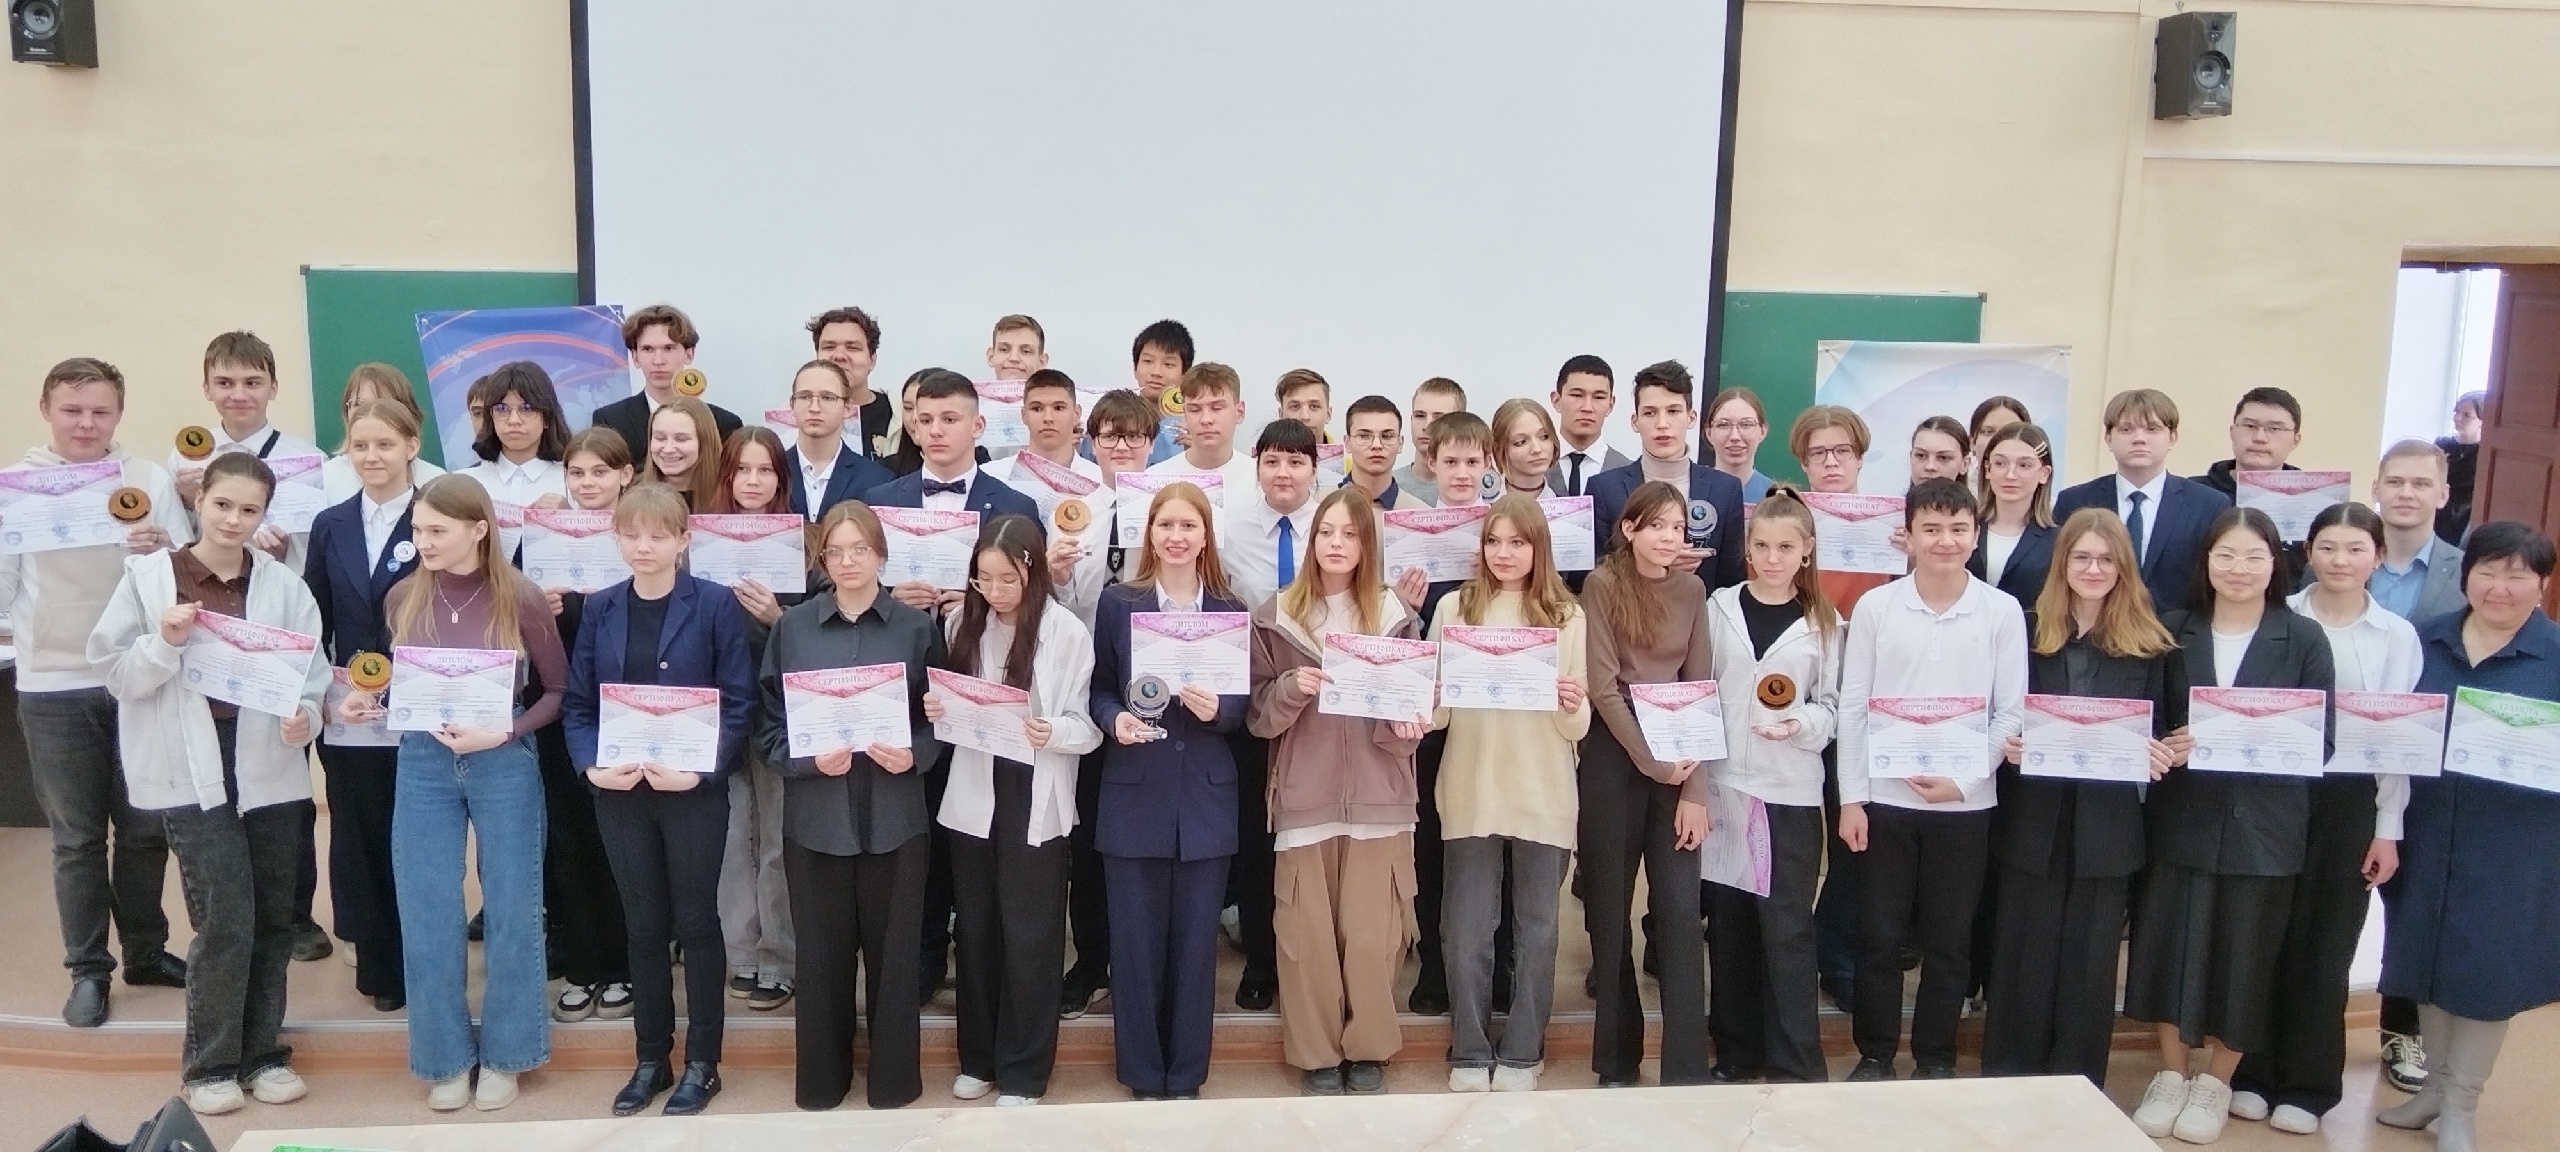 27 апреля в Иркутском педагогическом университете прошла XIII Межрегиональная олимпиада по географии, в которой приняли участие 500 человек из разных регионов России..